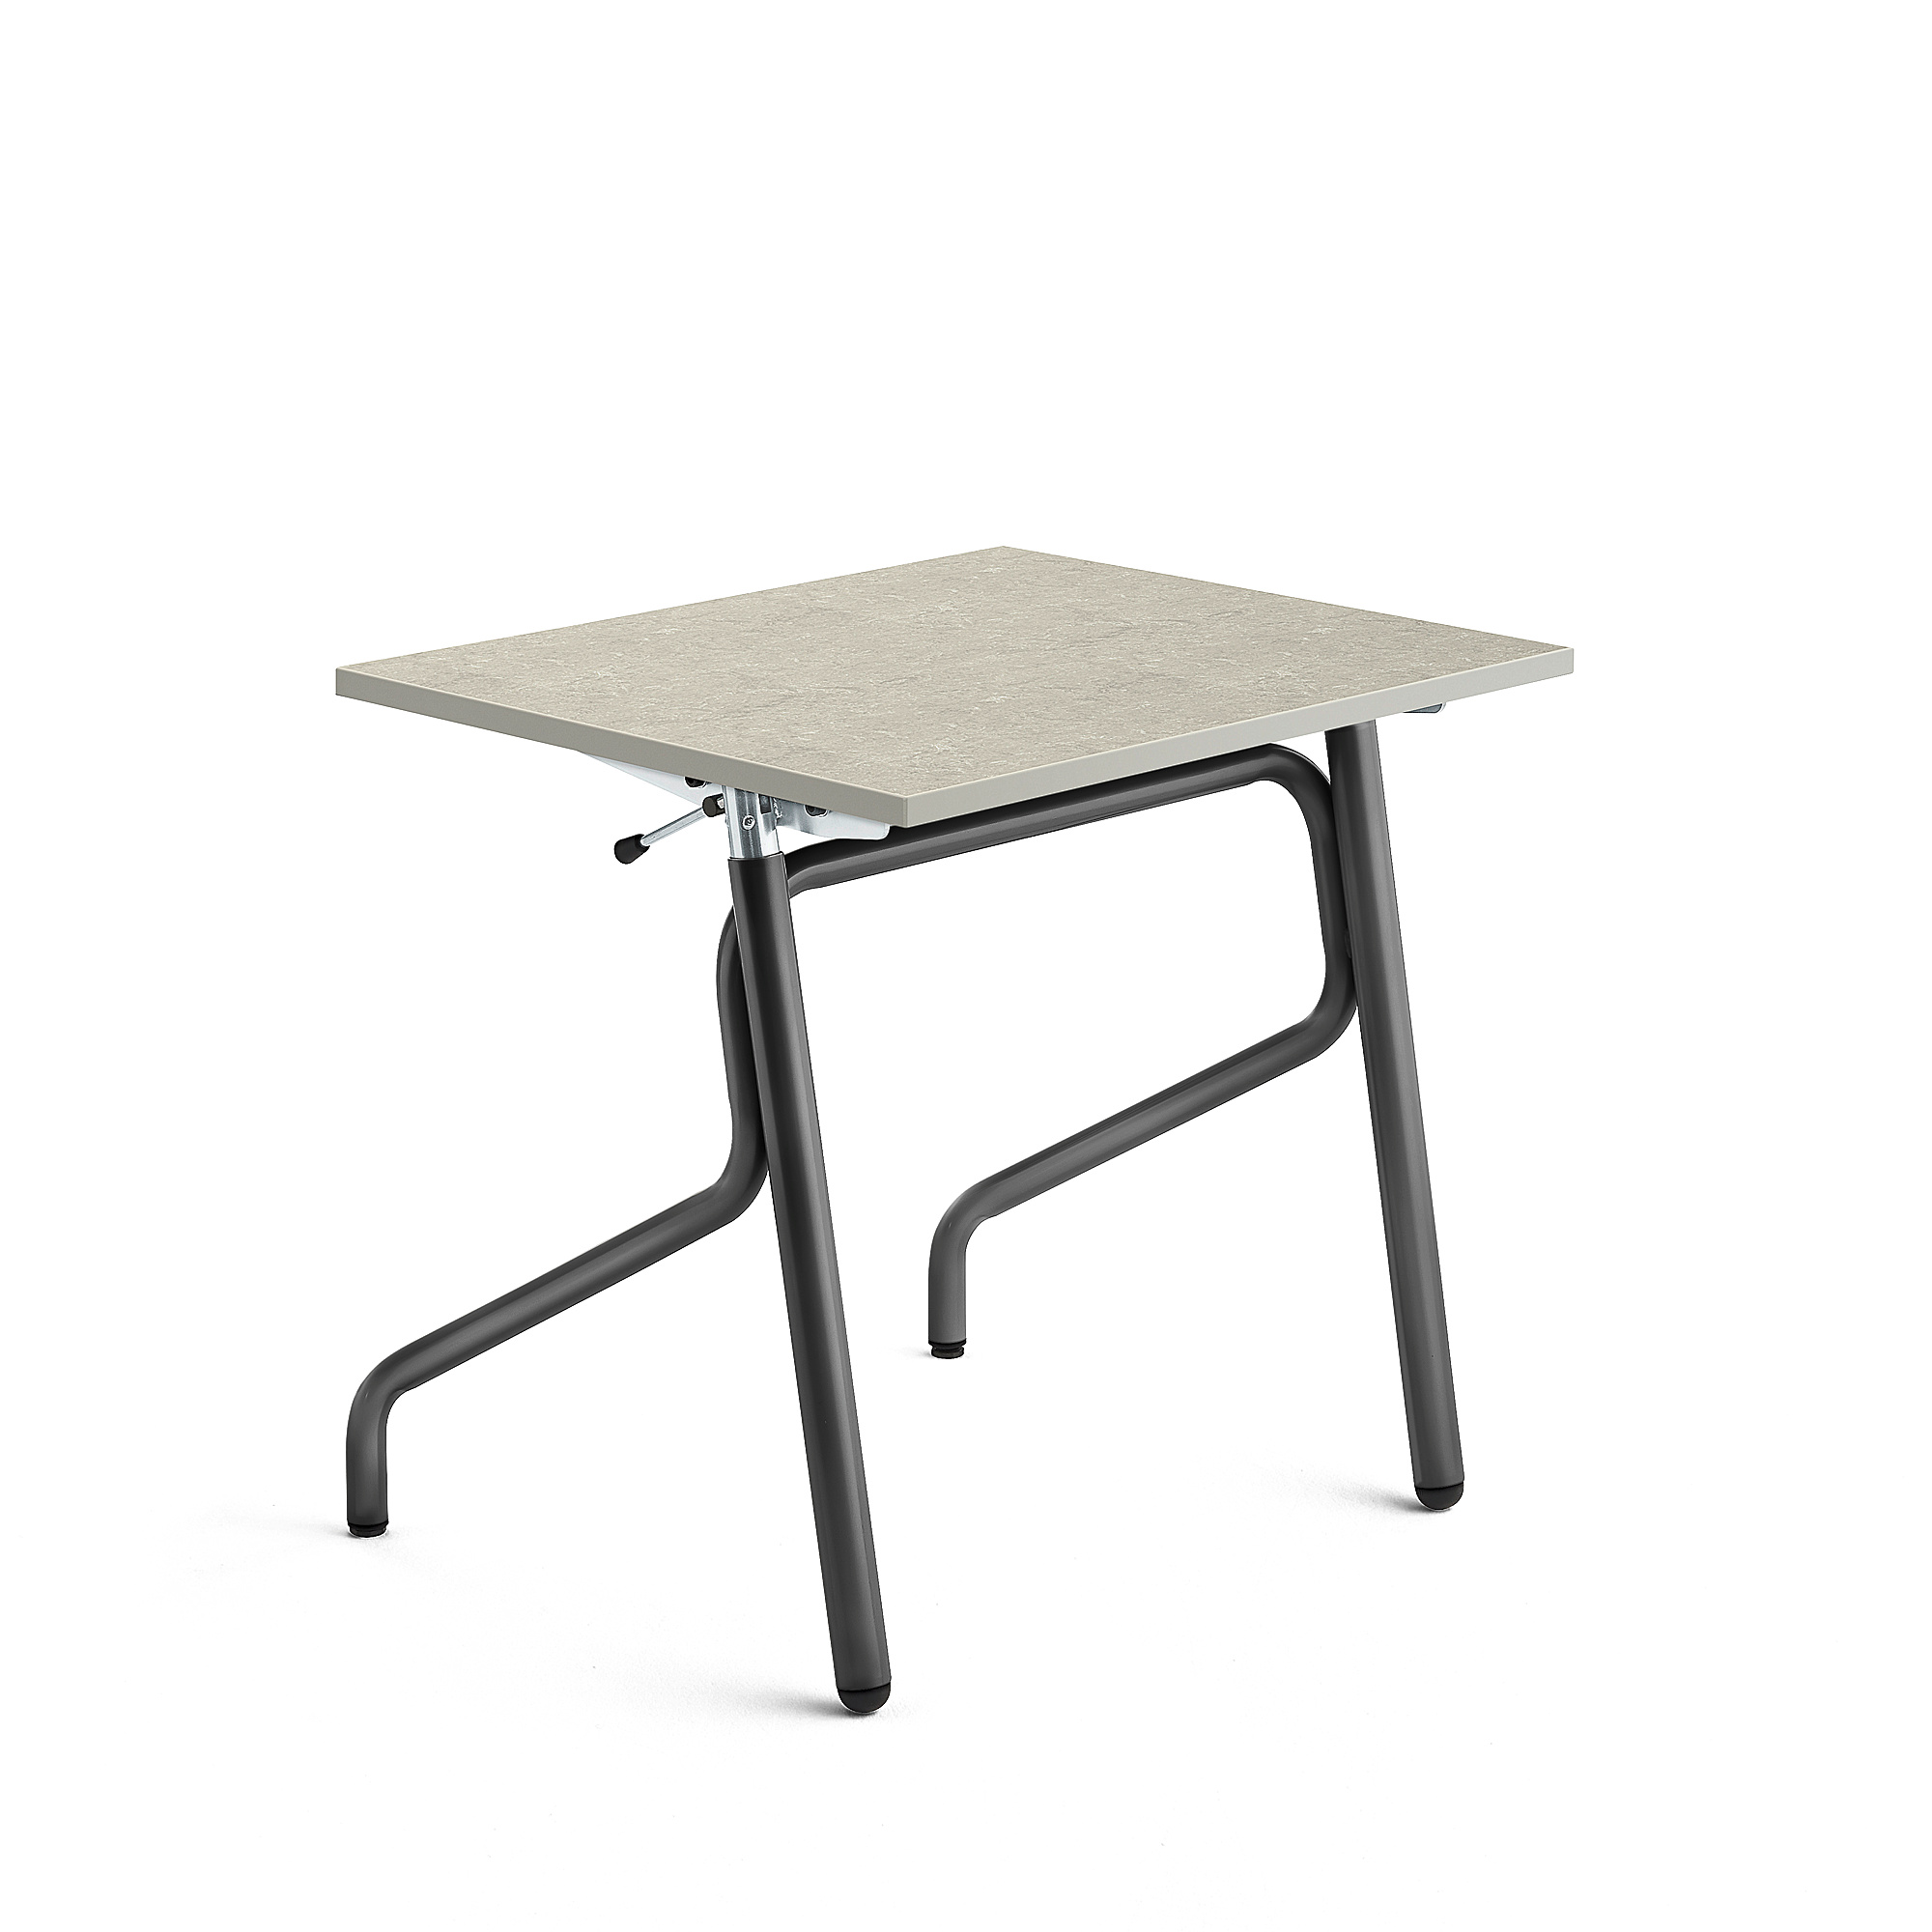 Školní lavice ADJUST, výškově nastavitelná, 700x600 mm, linoleum, šedá, antracitově šedá